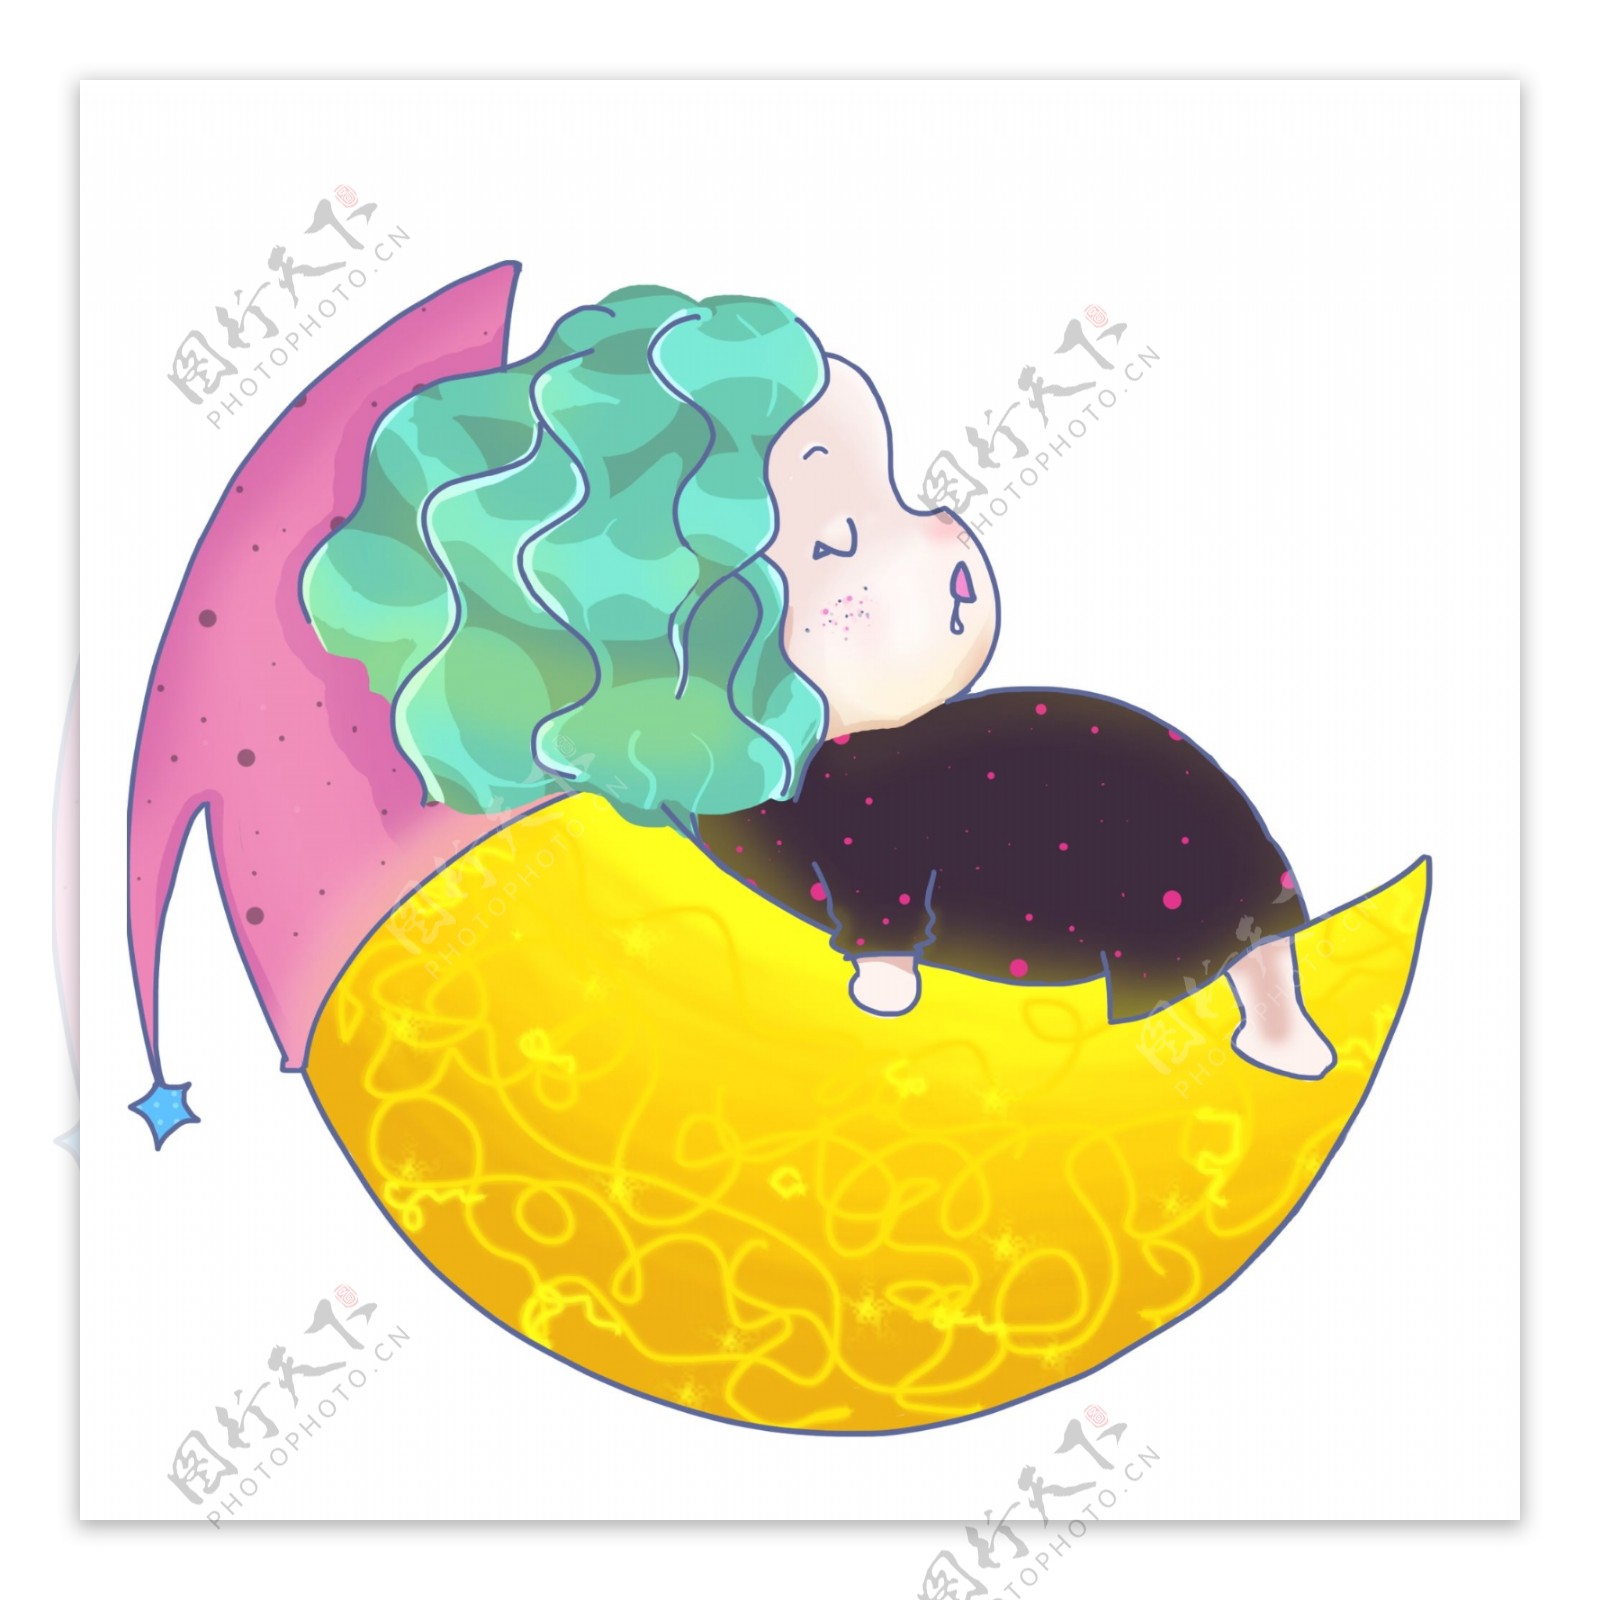 肥胖胖嘟嘟小女孩月亮上睡觉Q版卡通图标